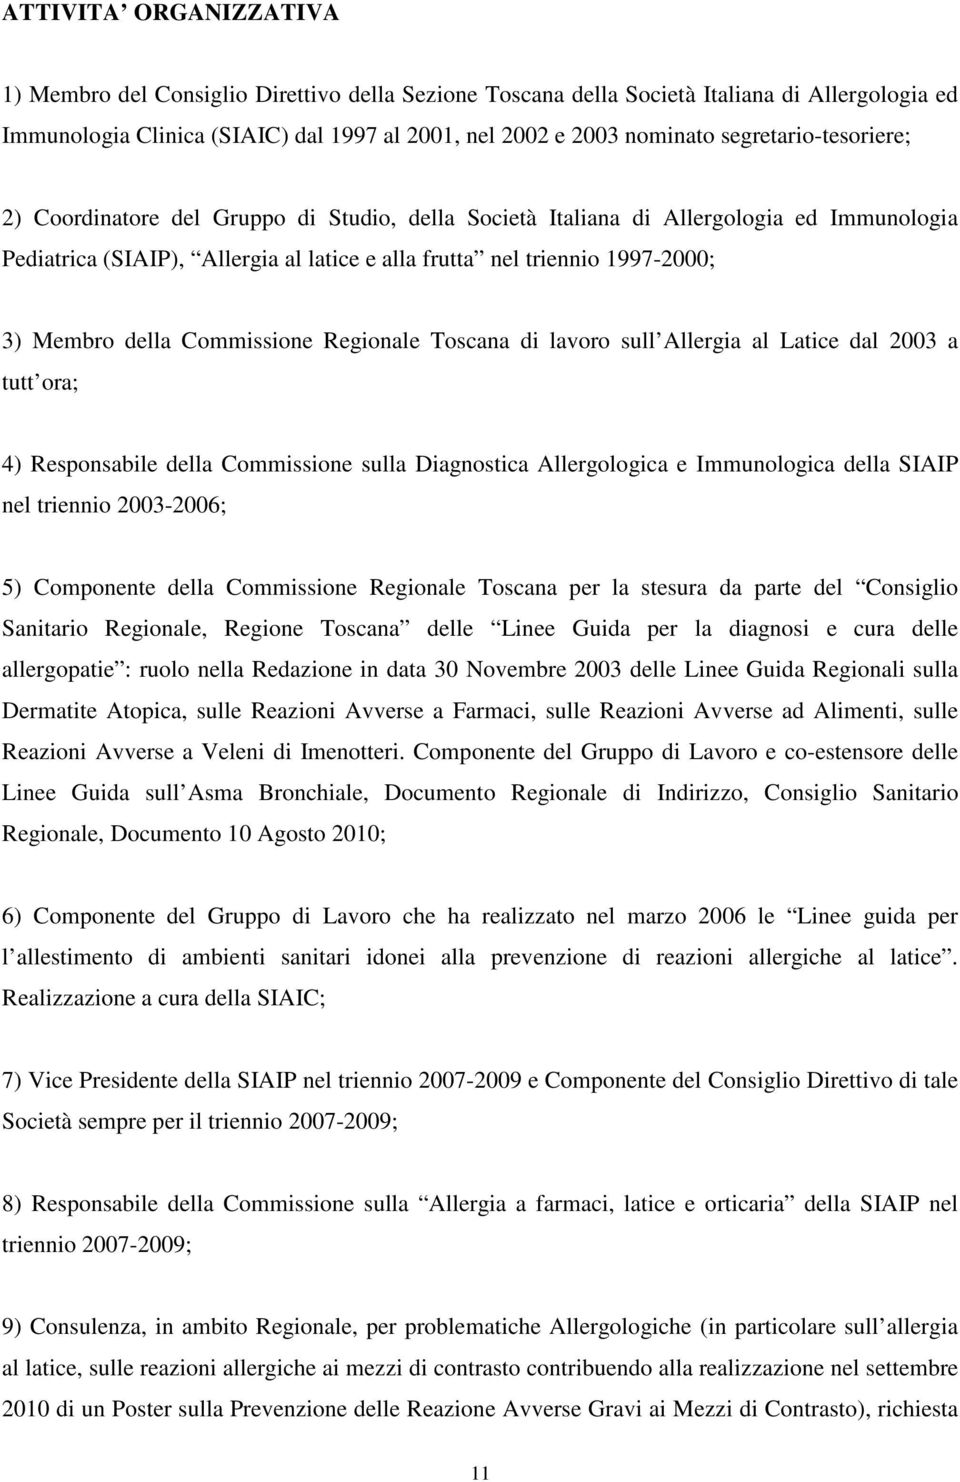 Membro della Commissione Regionale Toscana di lavoro sull Allergia al Latice dal 2003 a tutt ora; 4) Responsabile della Commissione sulla Diagnostica Allergologica e Immunologica della SIAIP nel